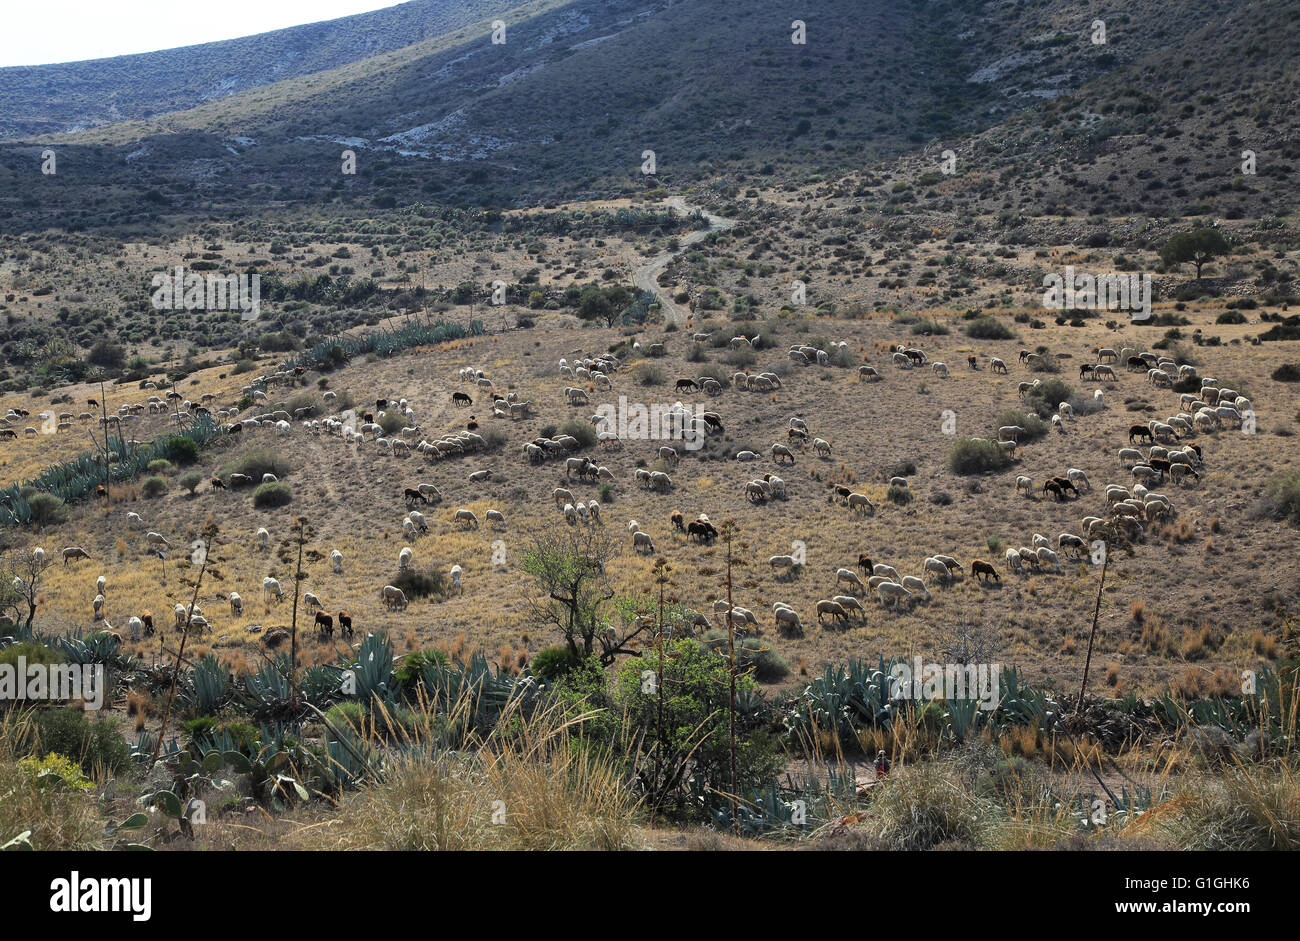 Herde von Schafen und Ziegen Weiden im trockenen kargen Landschaft, Presillas Bajas, Nationalpark Cabo de Gata, Almeria, Spanien Stockfoto